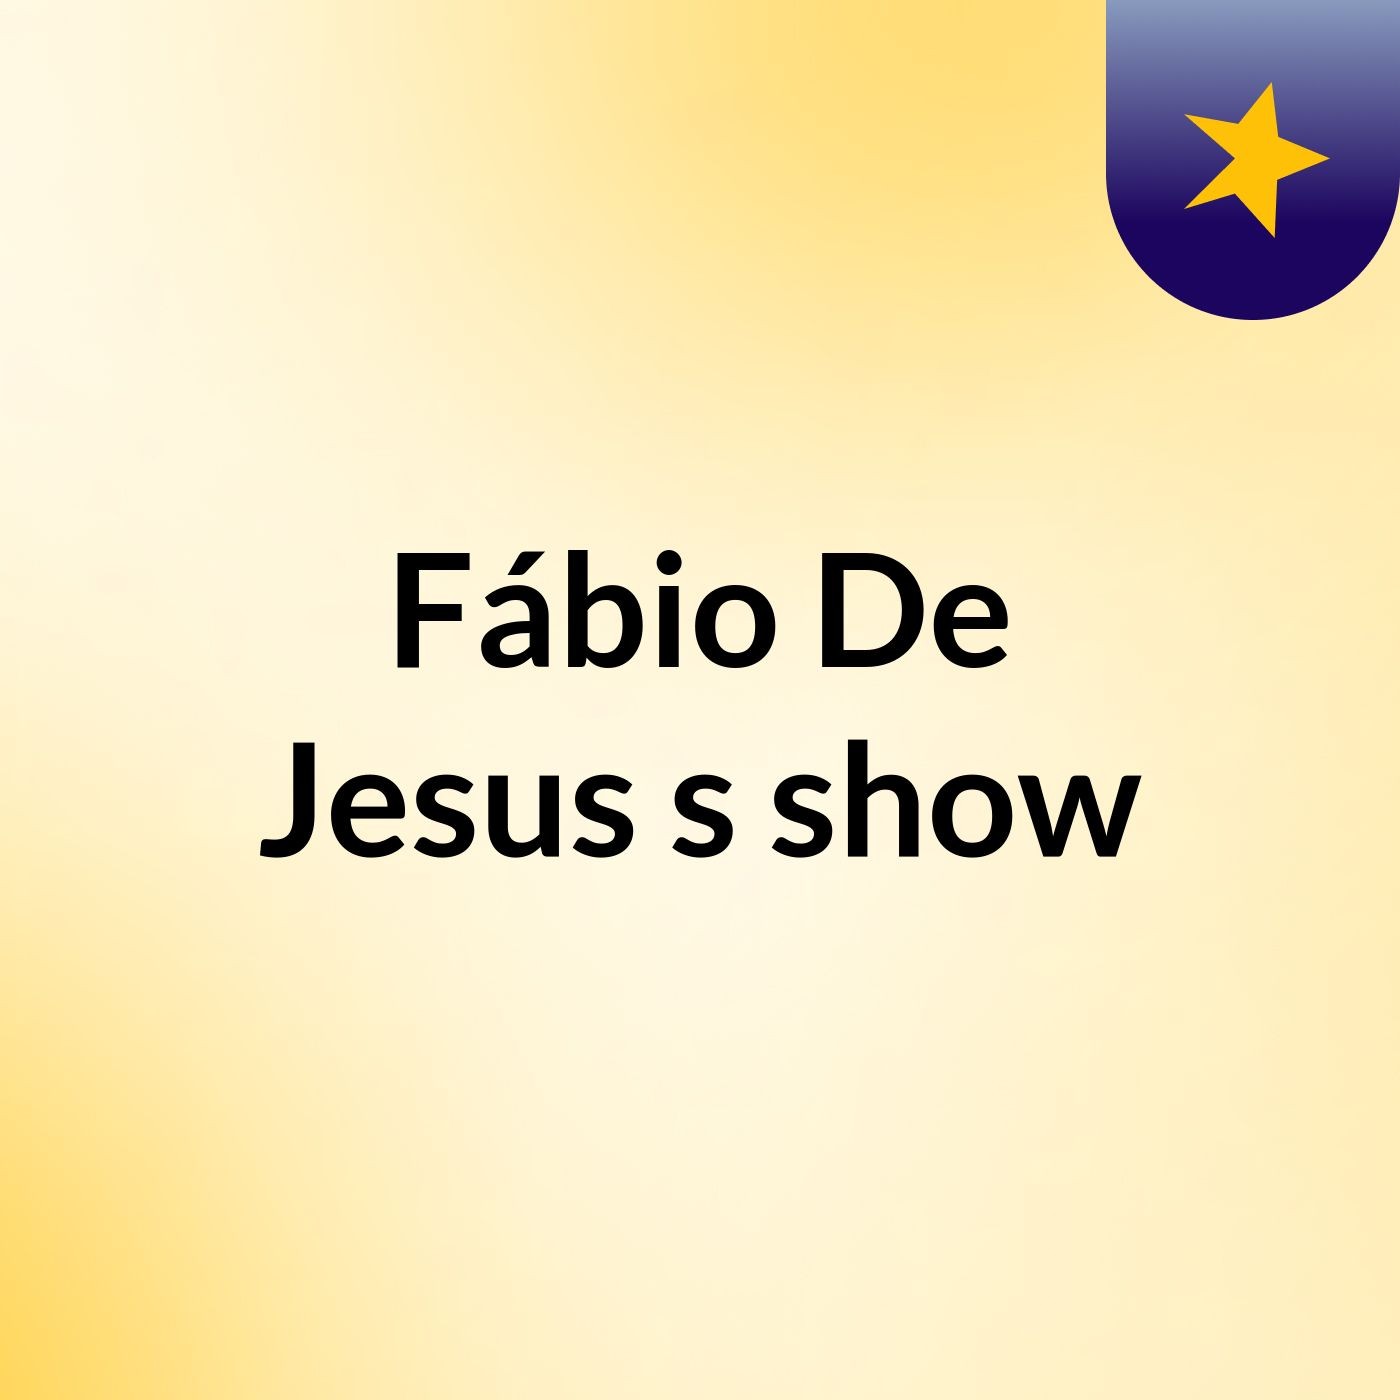 Fábio De Jesus's show